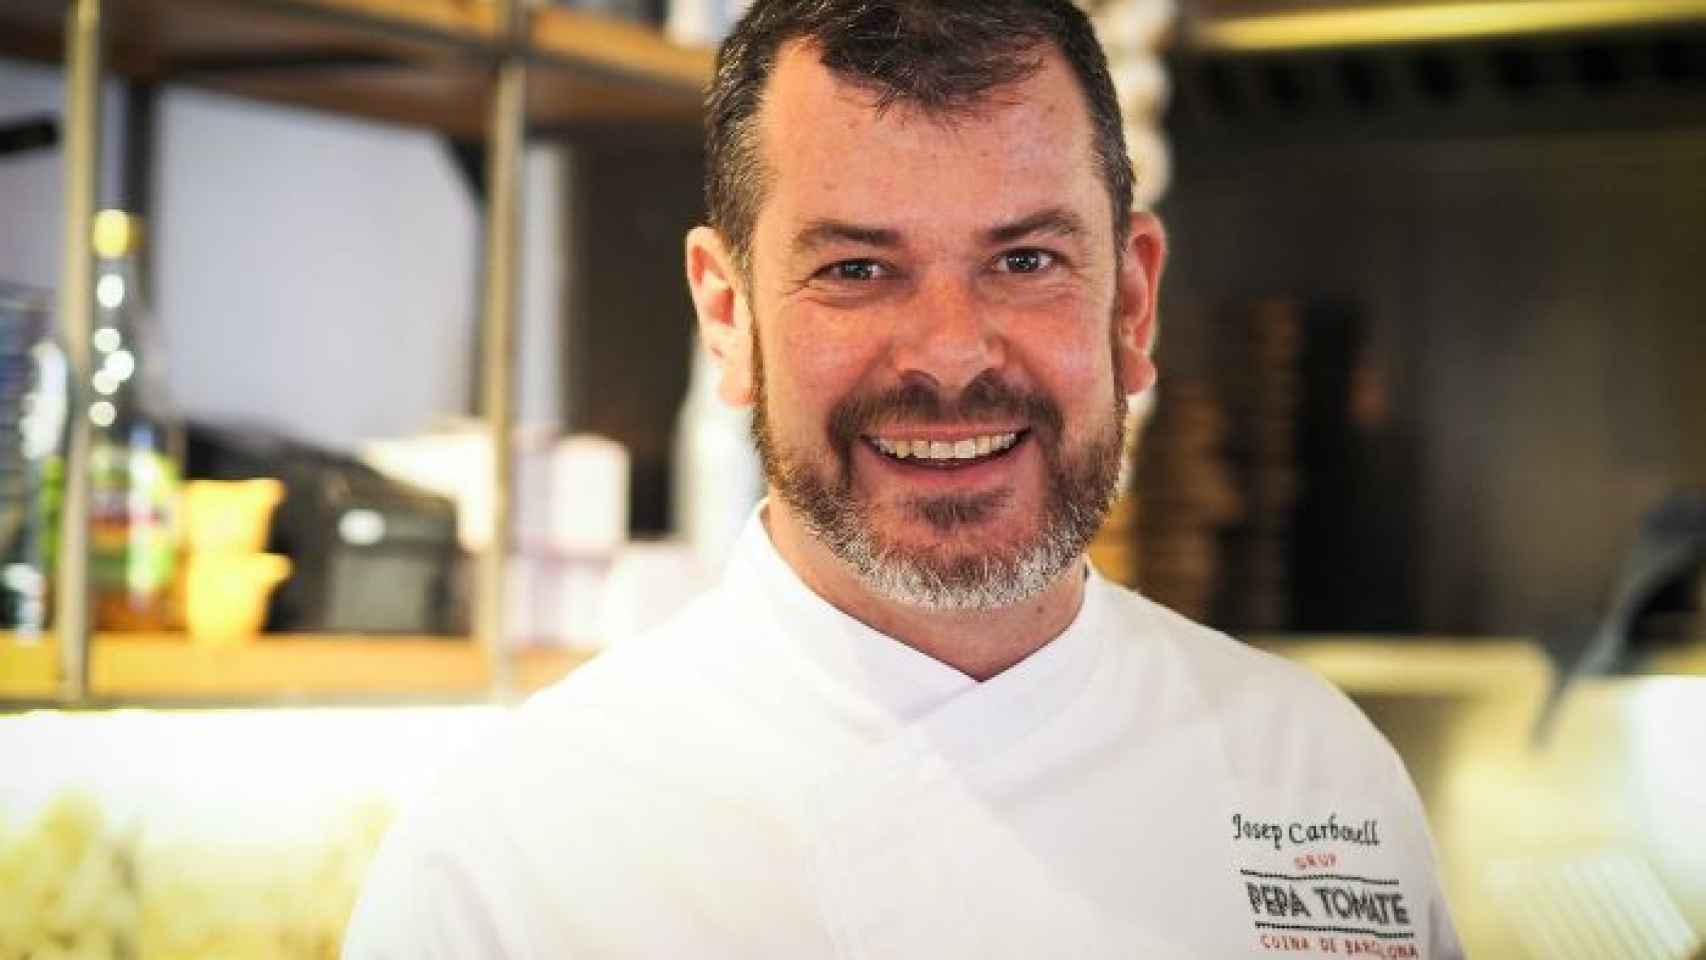 Josep Carbonell, nuevo chef ejecutivo de Pepa Tomate